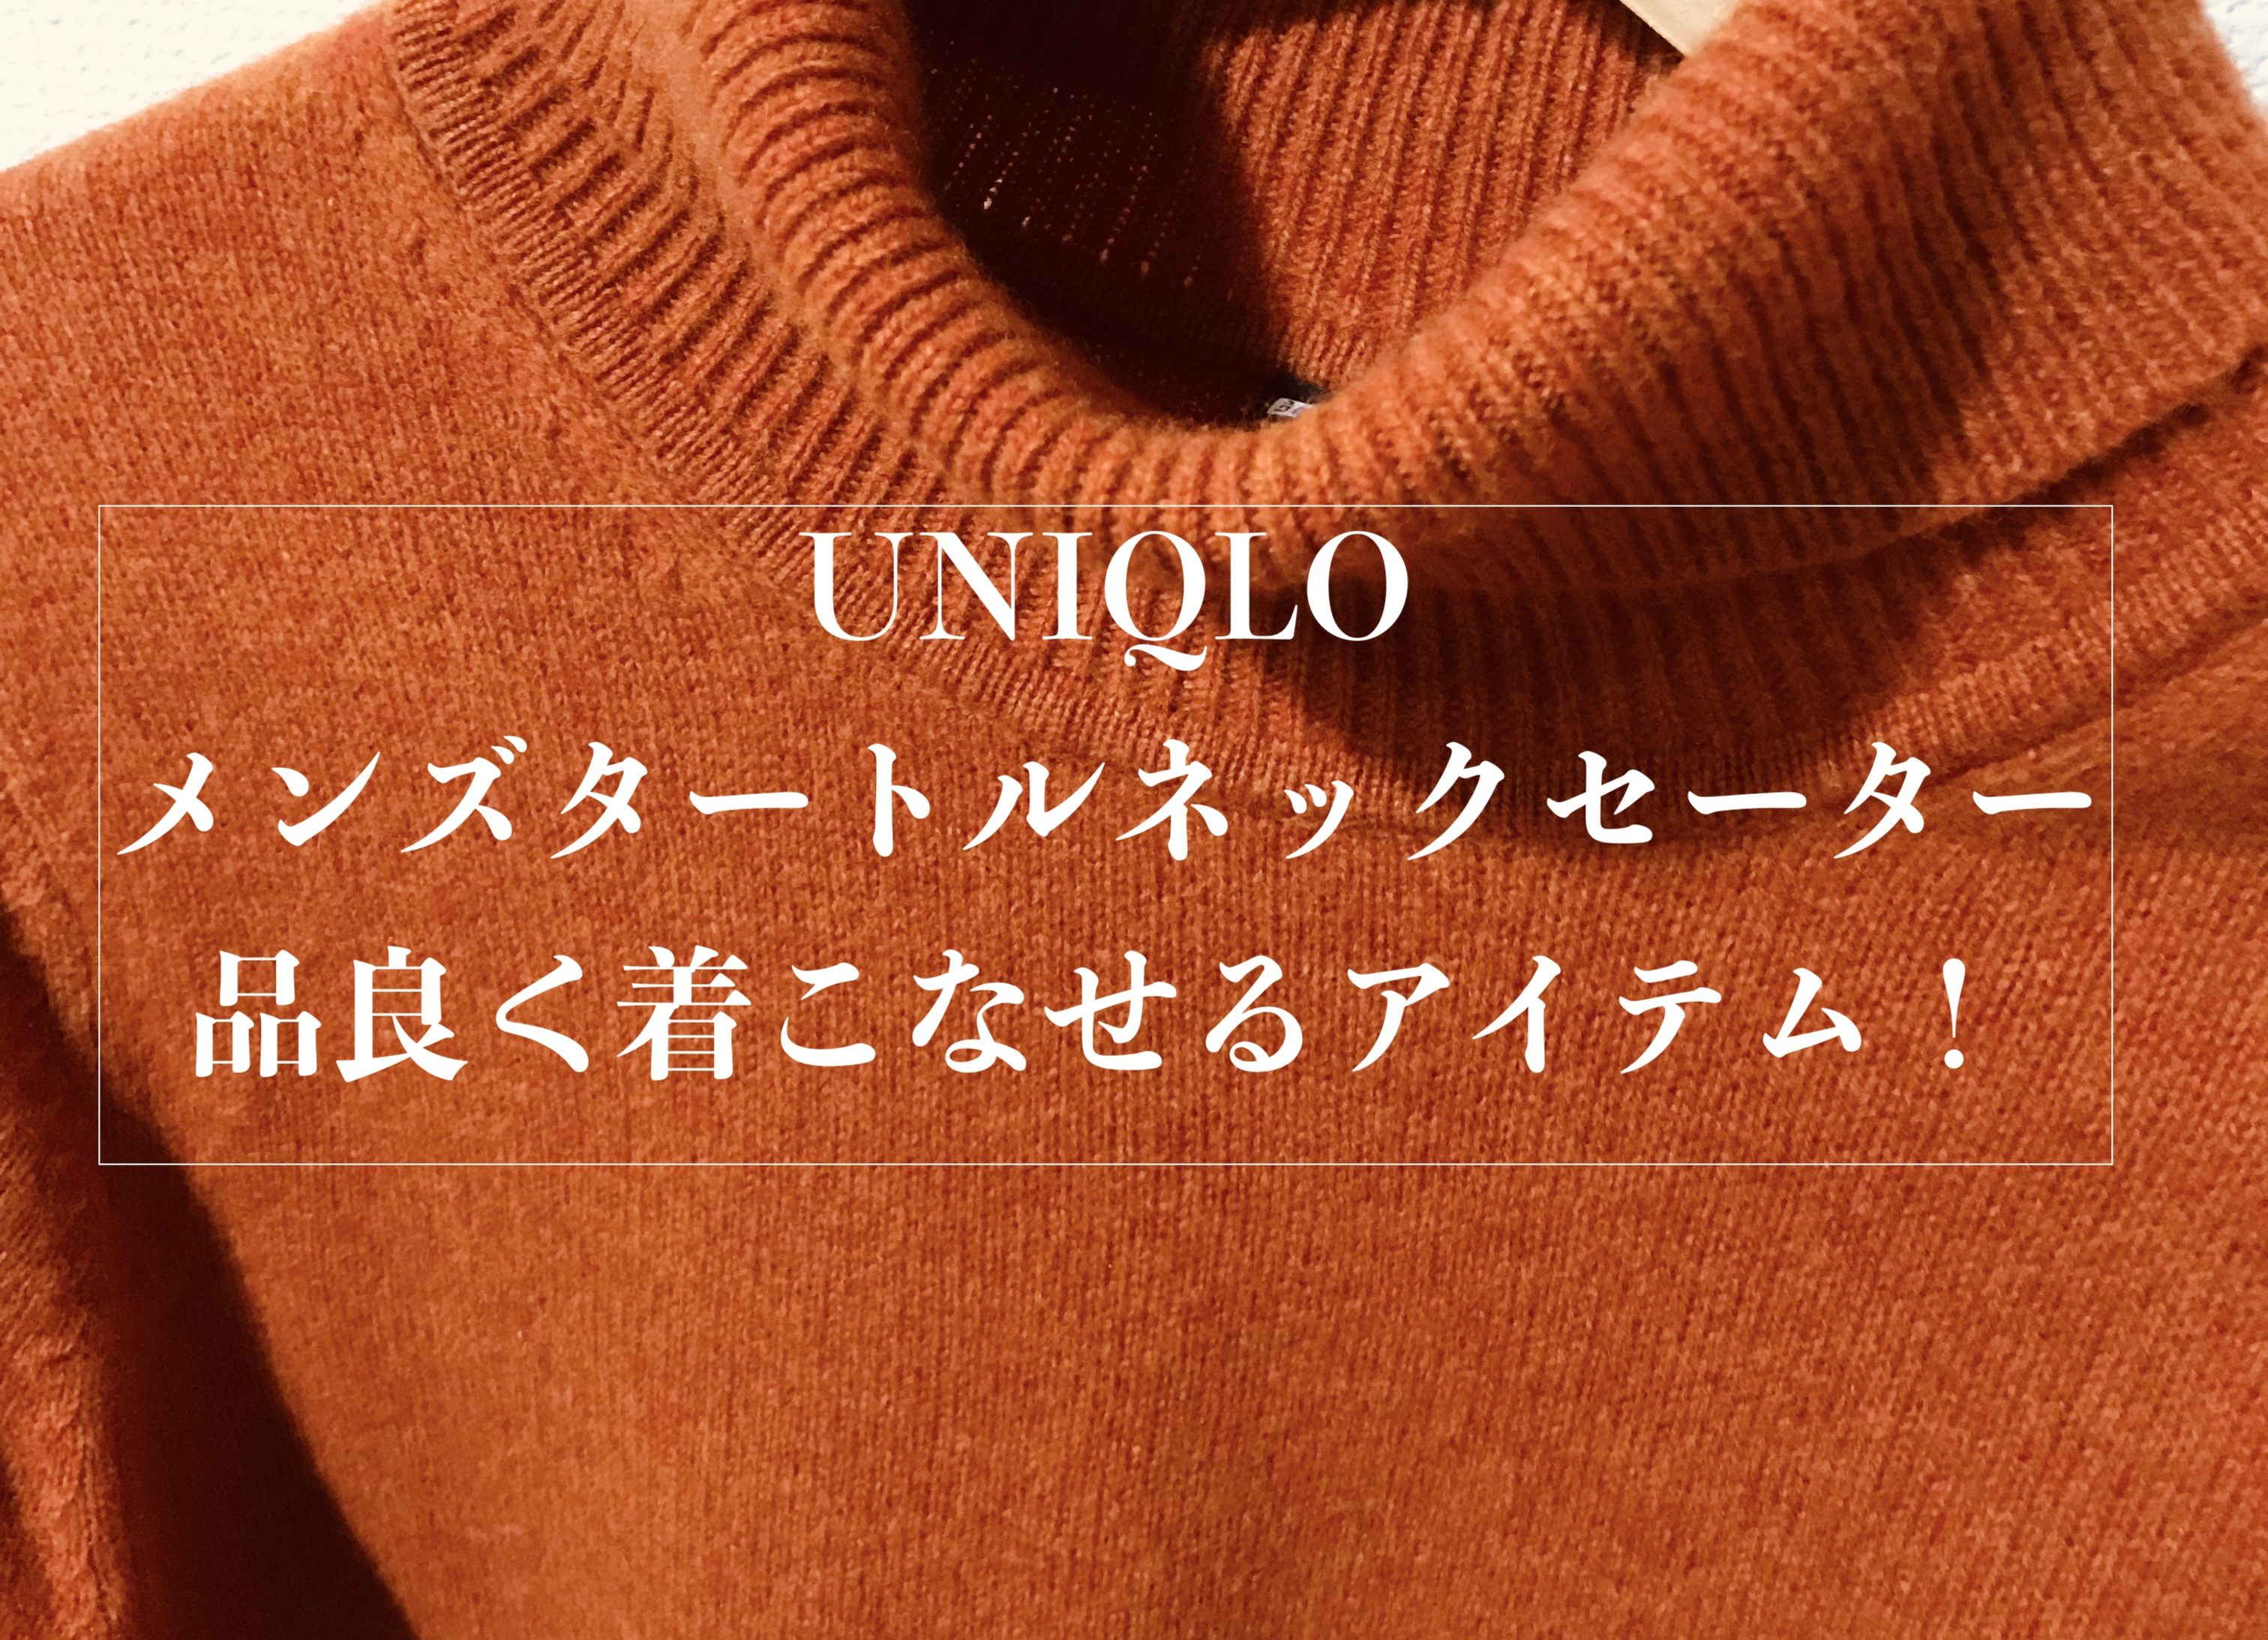 ユニクロのメンズタートルネックセーターは明るい色でも品良く着こなせておすすめ Small オシャレから自分をアップグレードする